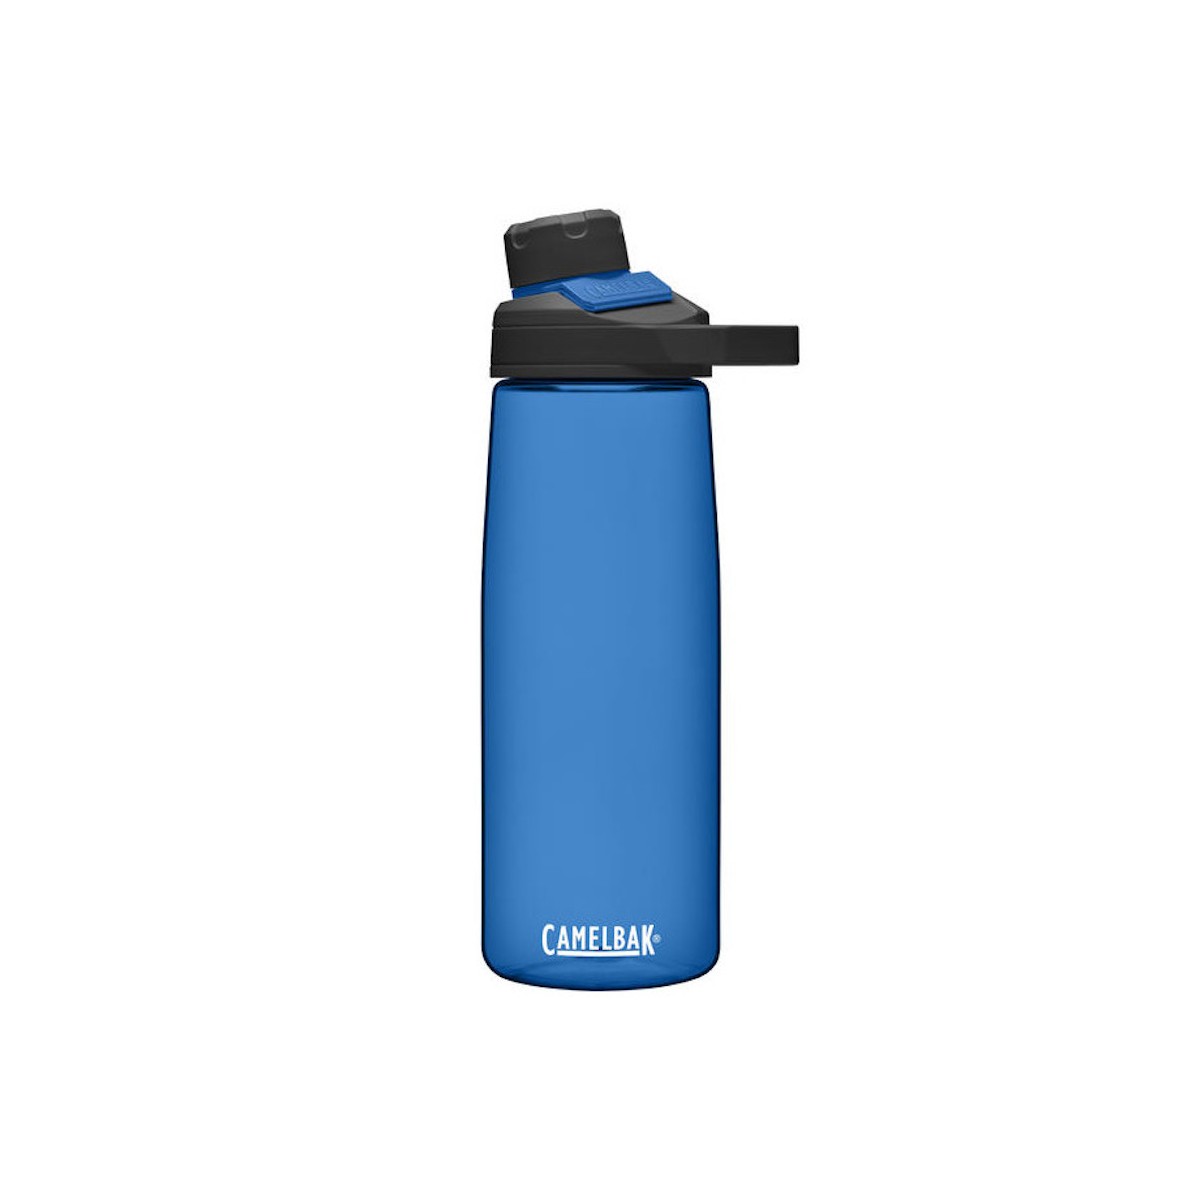 CAMELBAK CHUTE MAG 750ML water bottle - blue